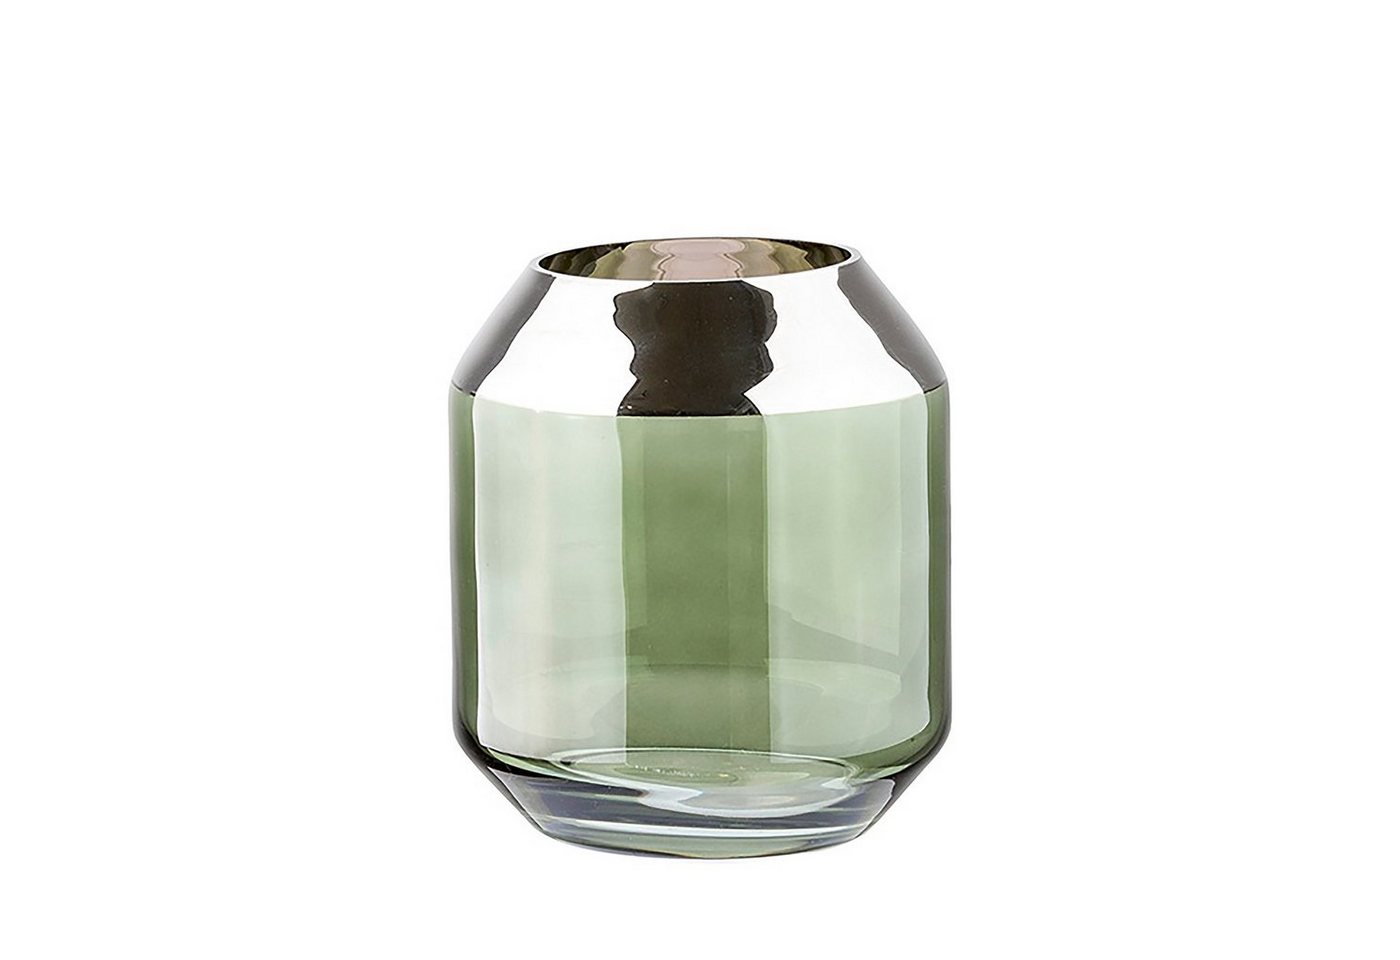 Fink Teelichthalter Teelichthalter / Vase SMILLA - dunkelgrün - Glas - H.14cm x B.12cm, mundgeblasen - folierter silberfarbener Rand - Ø Öffnung: 9,5 cm von Fink